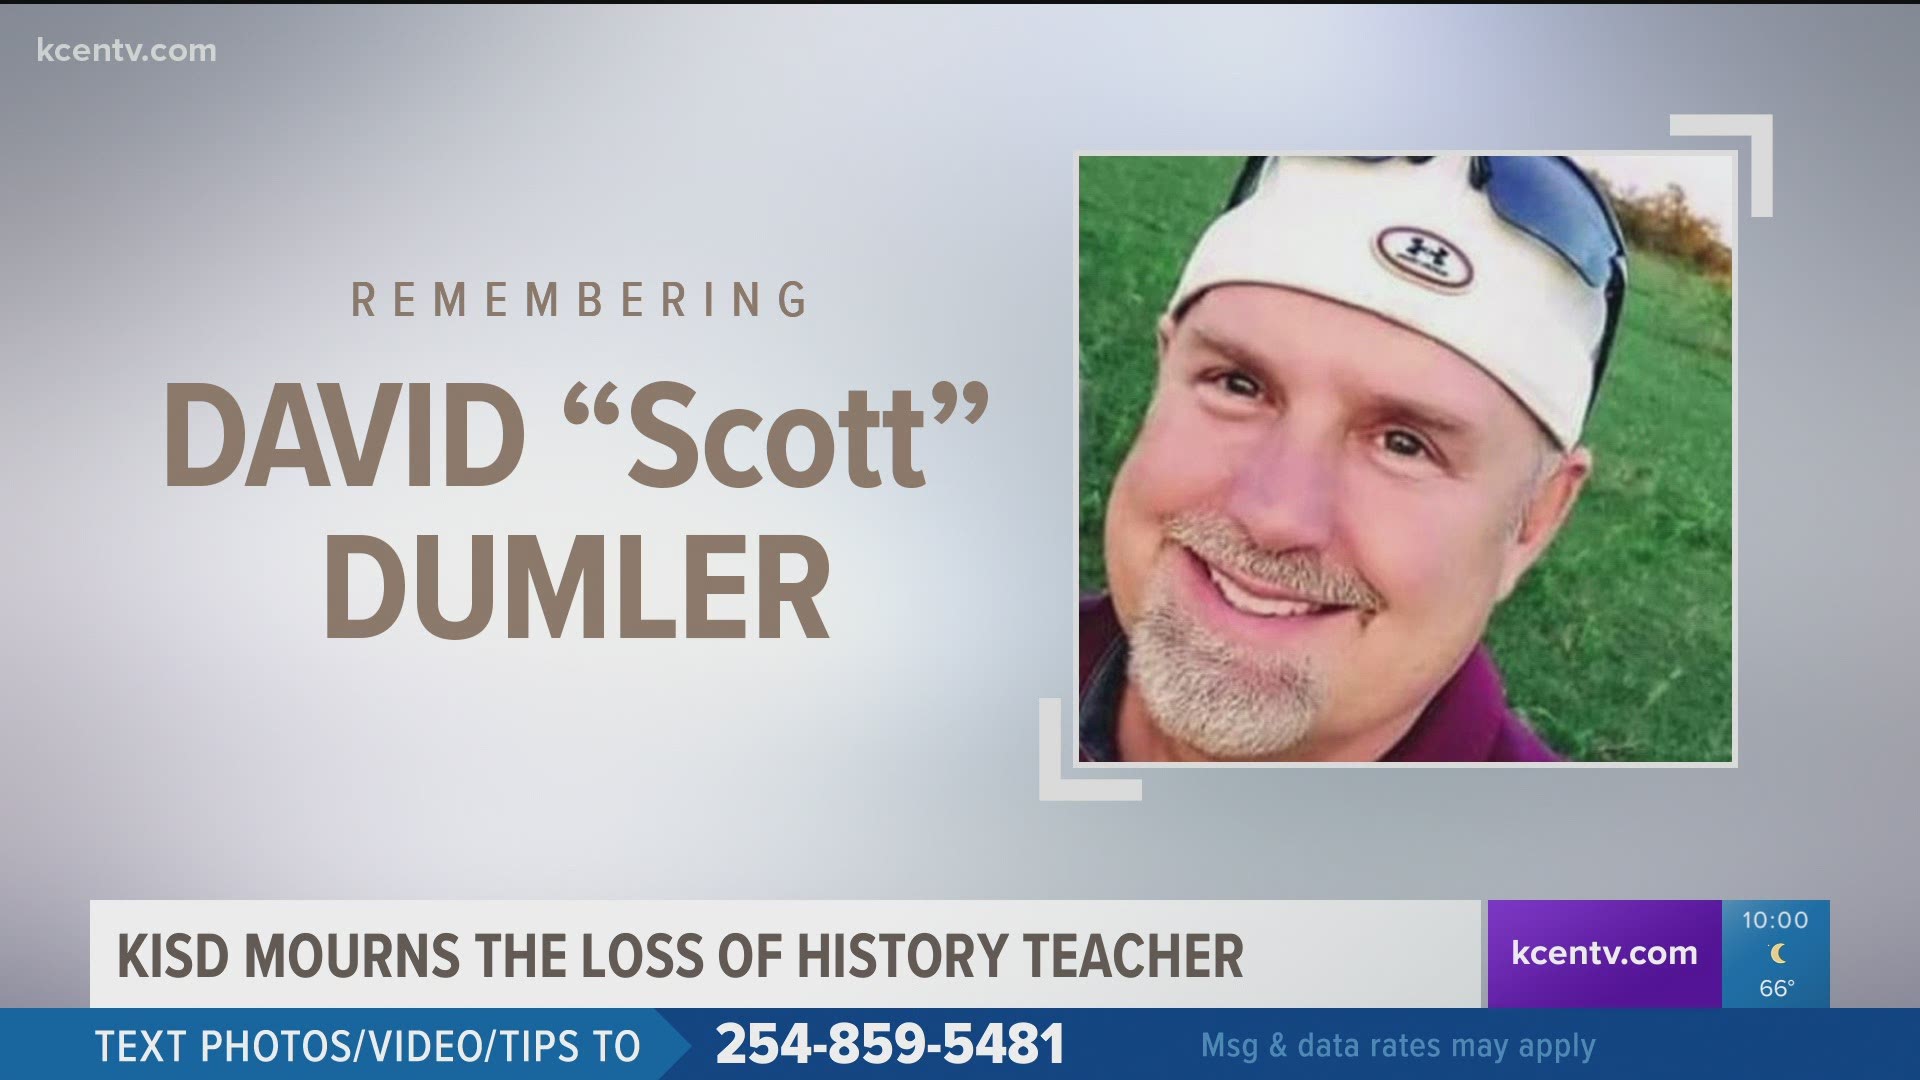 David “Scott” Dumler, a history teacher at Killeen High School, dies at 55.